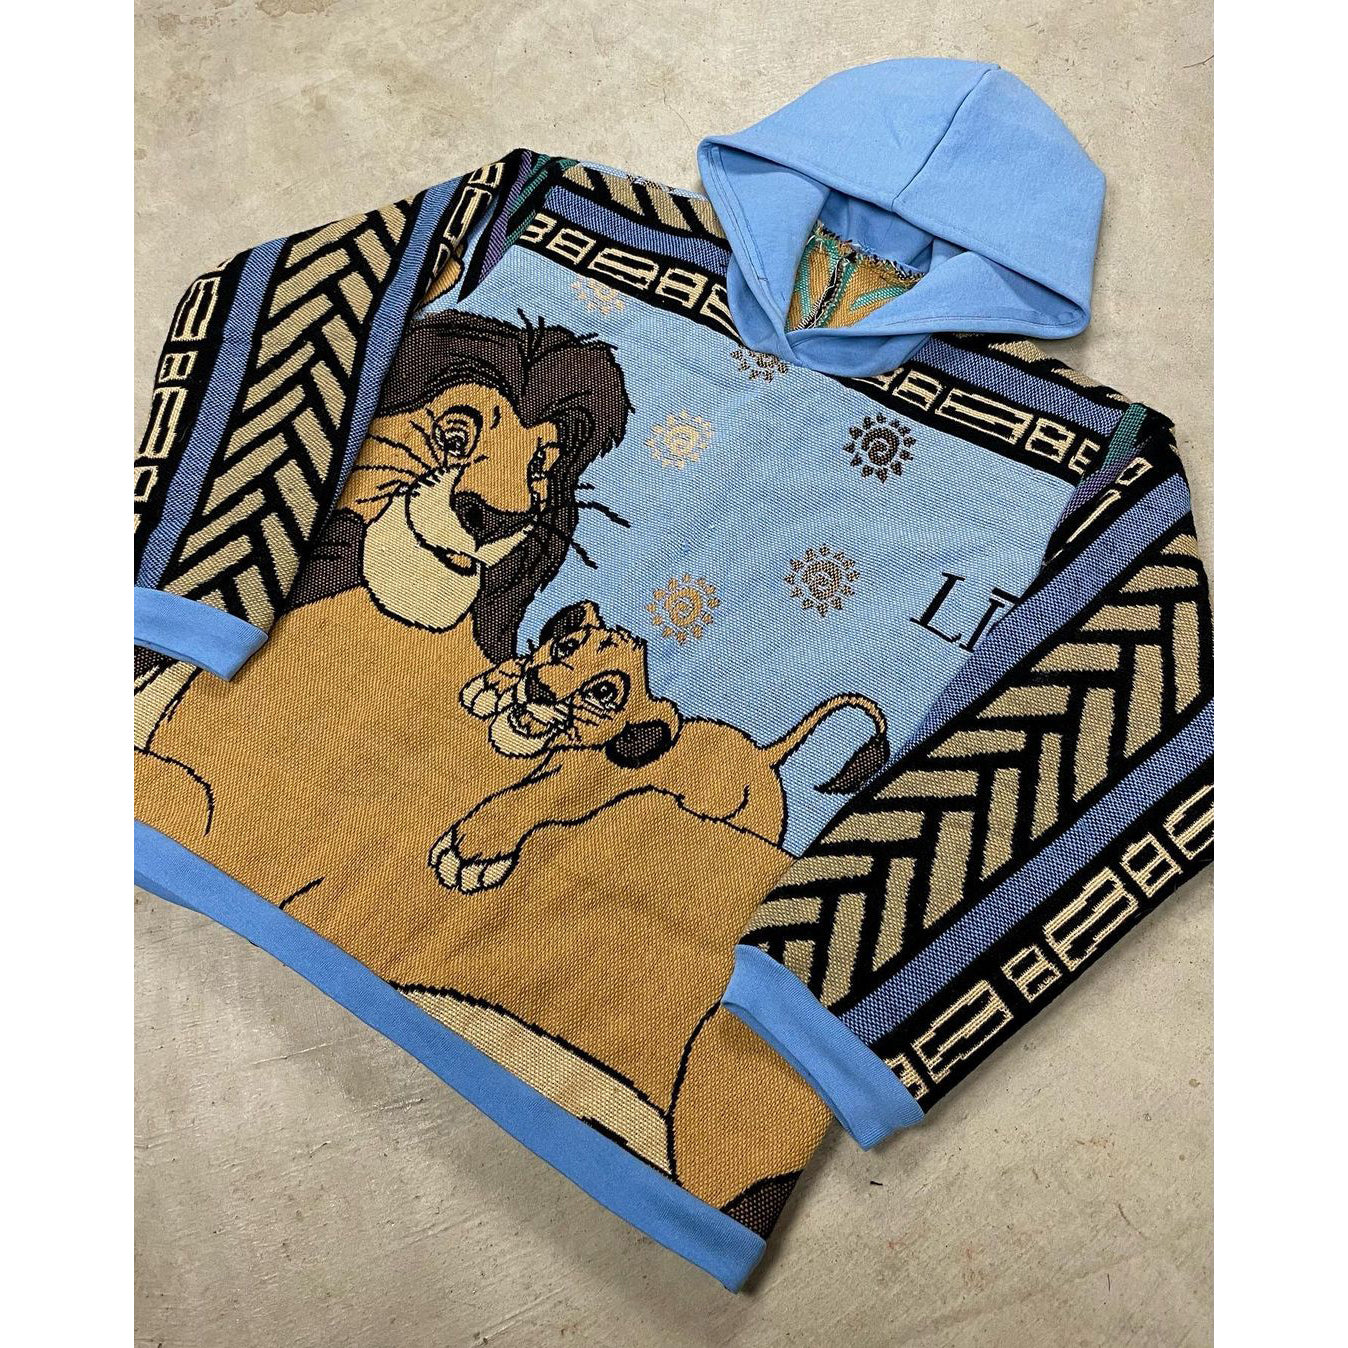 Street hoodie with cartoon trendy brand pattern